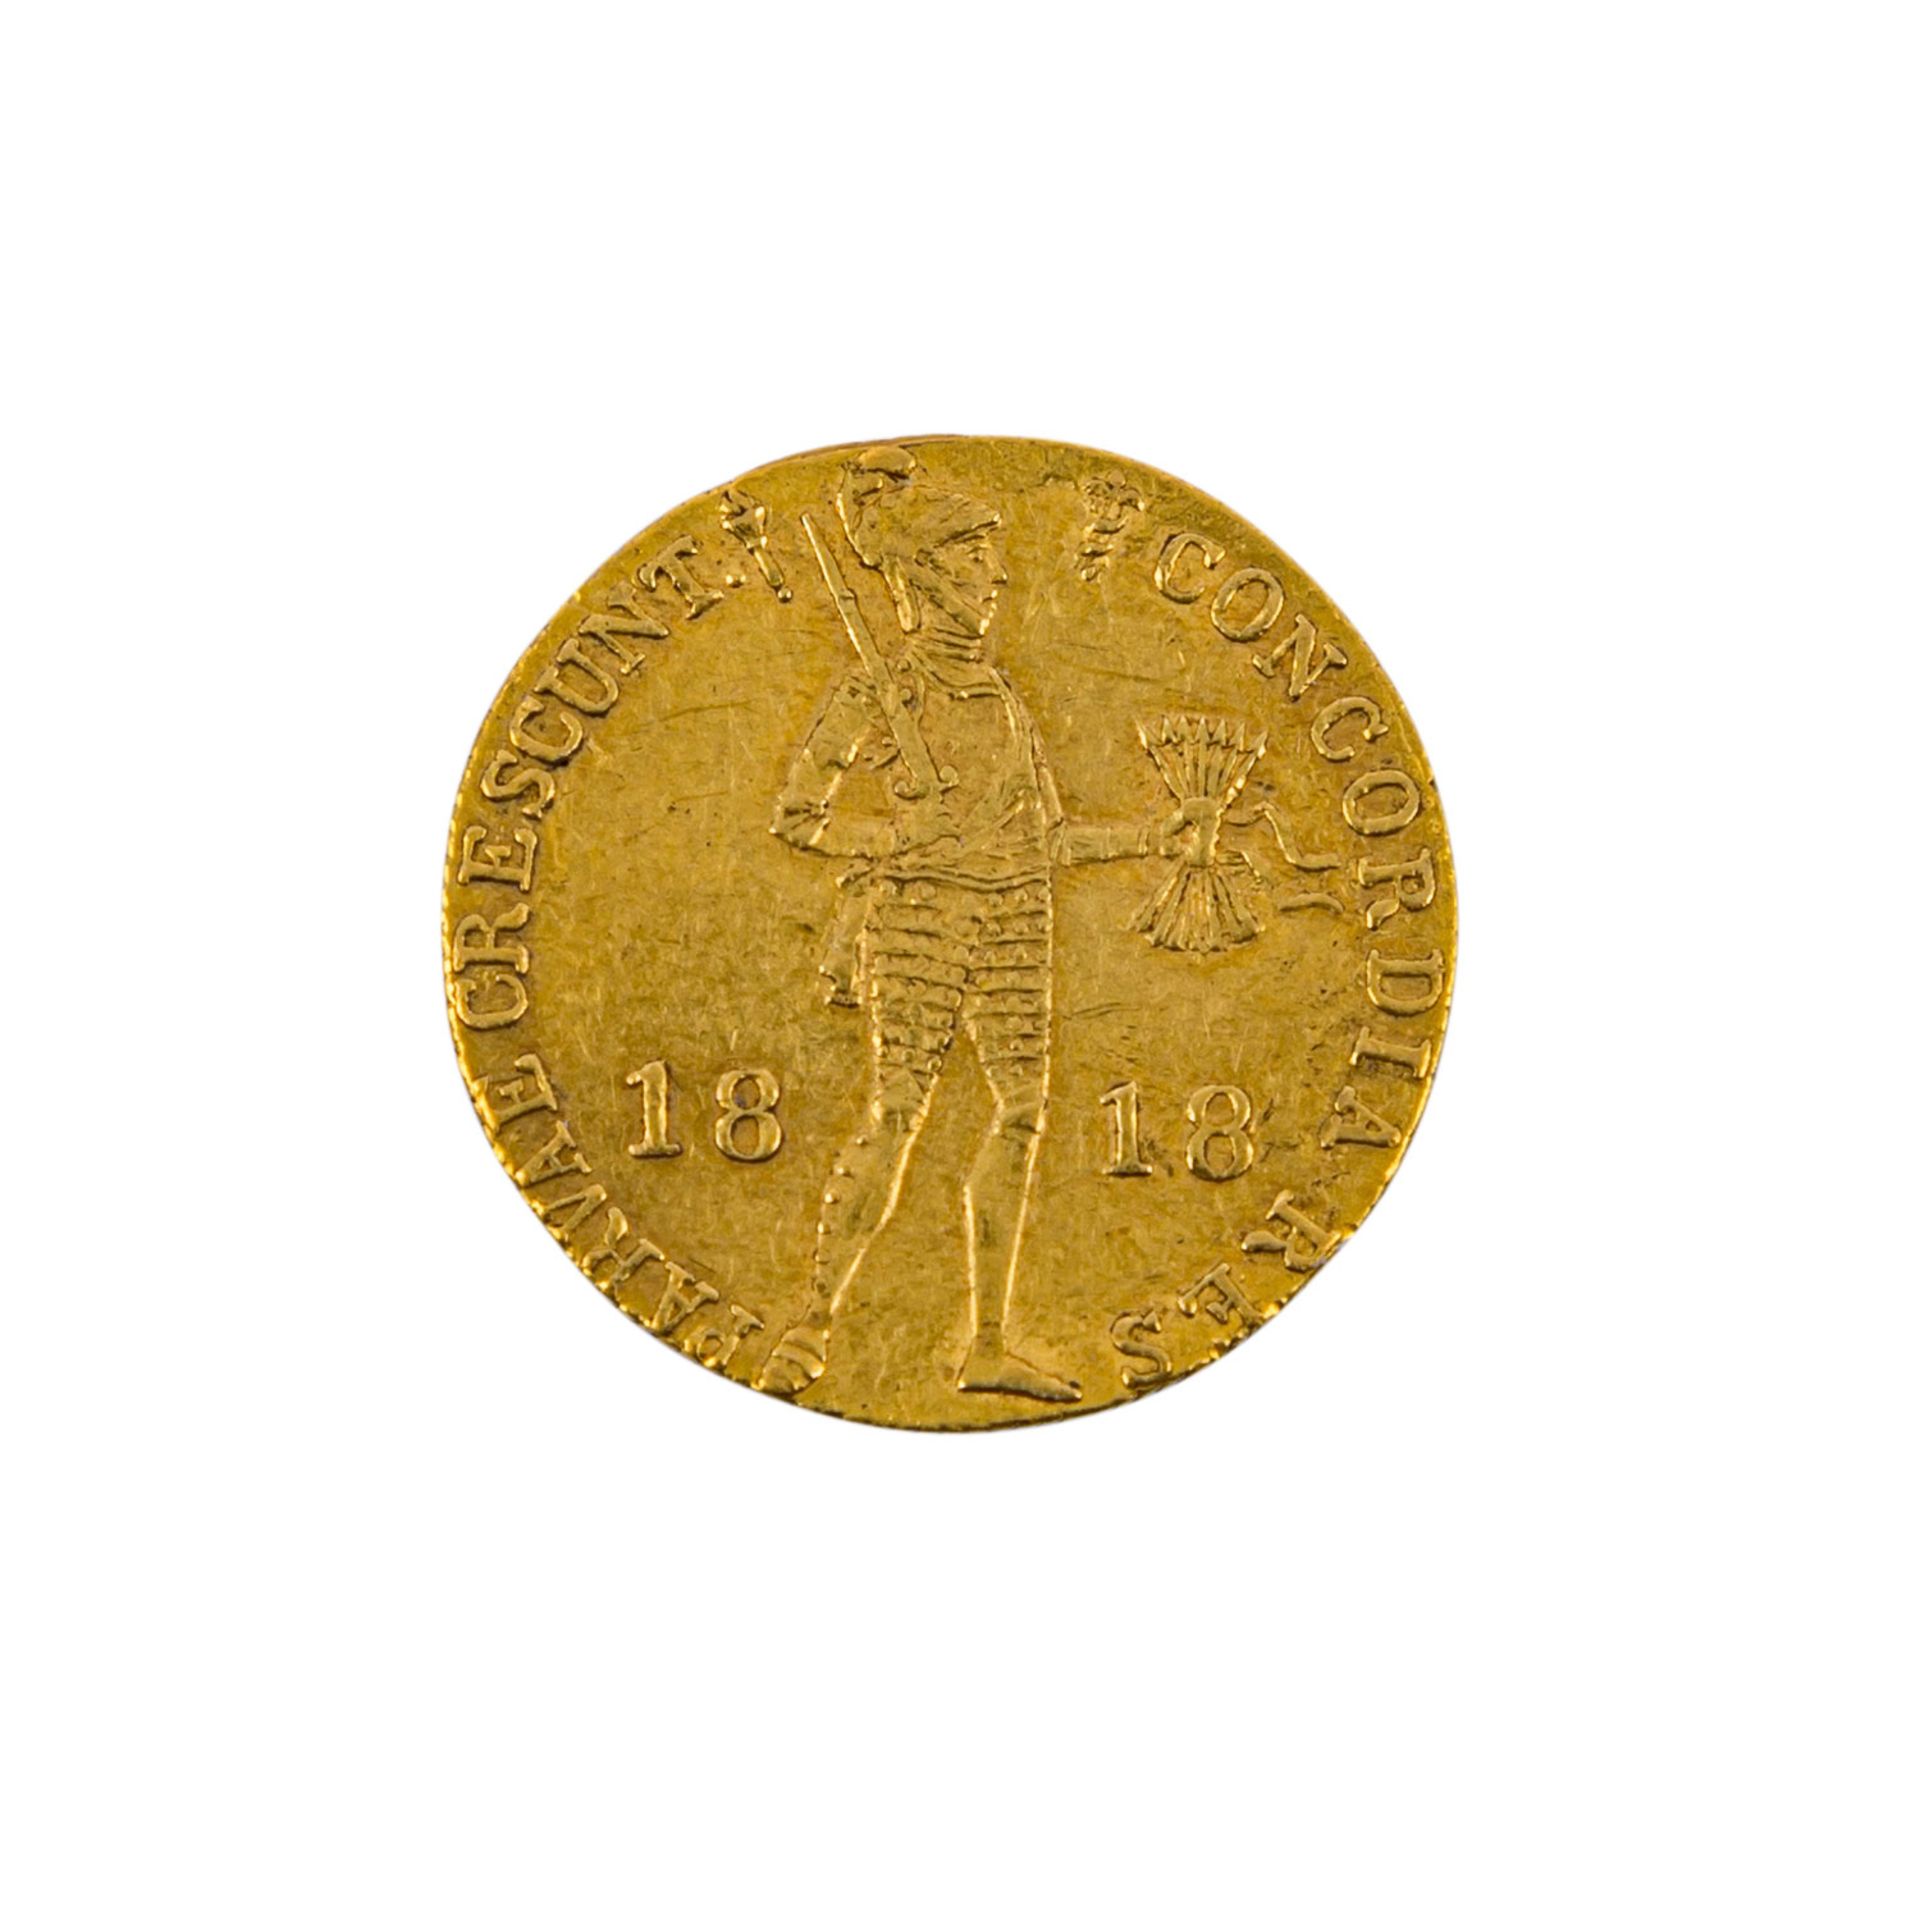 Niederlande/GOLD - 1 Ritterdukat 1818, Willem I., ss,leicht gebogen, berieben, Kratzer, Randkerbe,